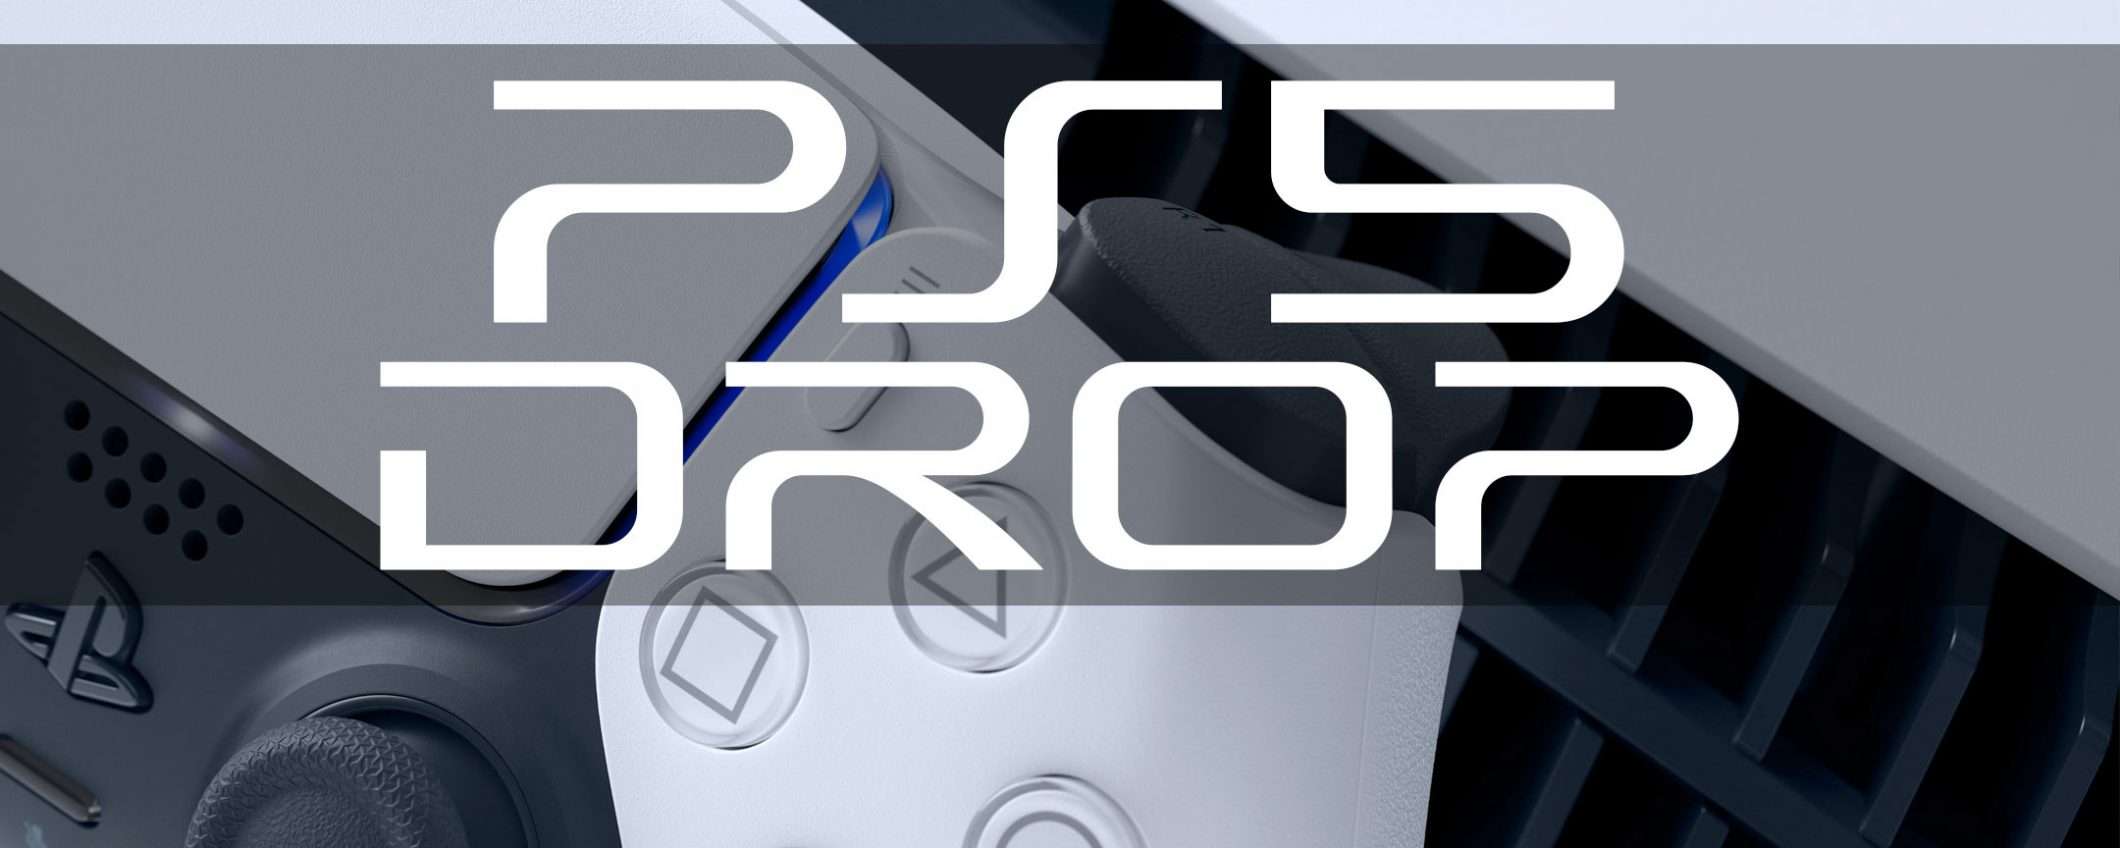 PS5 disponibile su Mediaworld, 20 luglio (update)